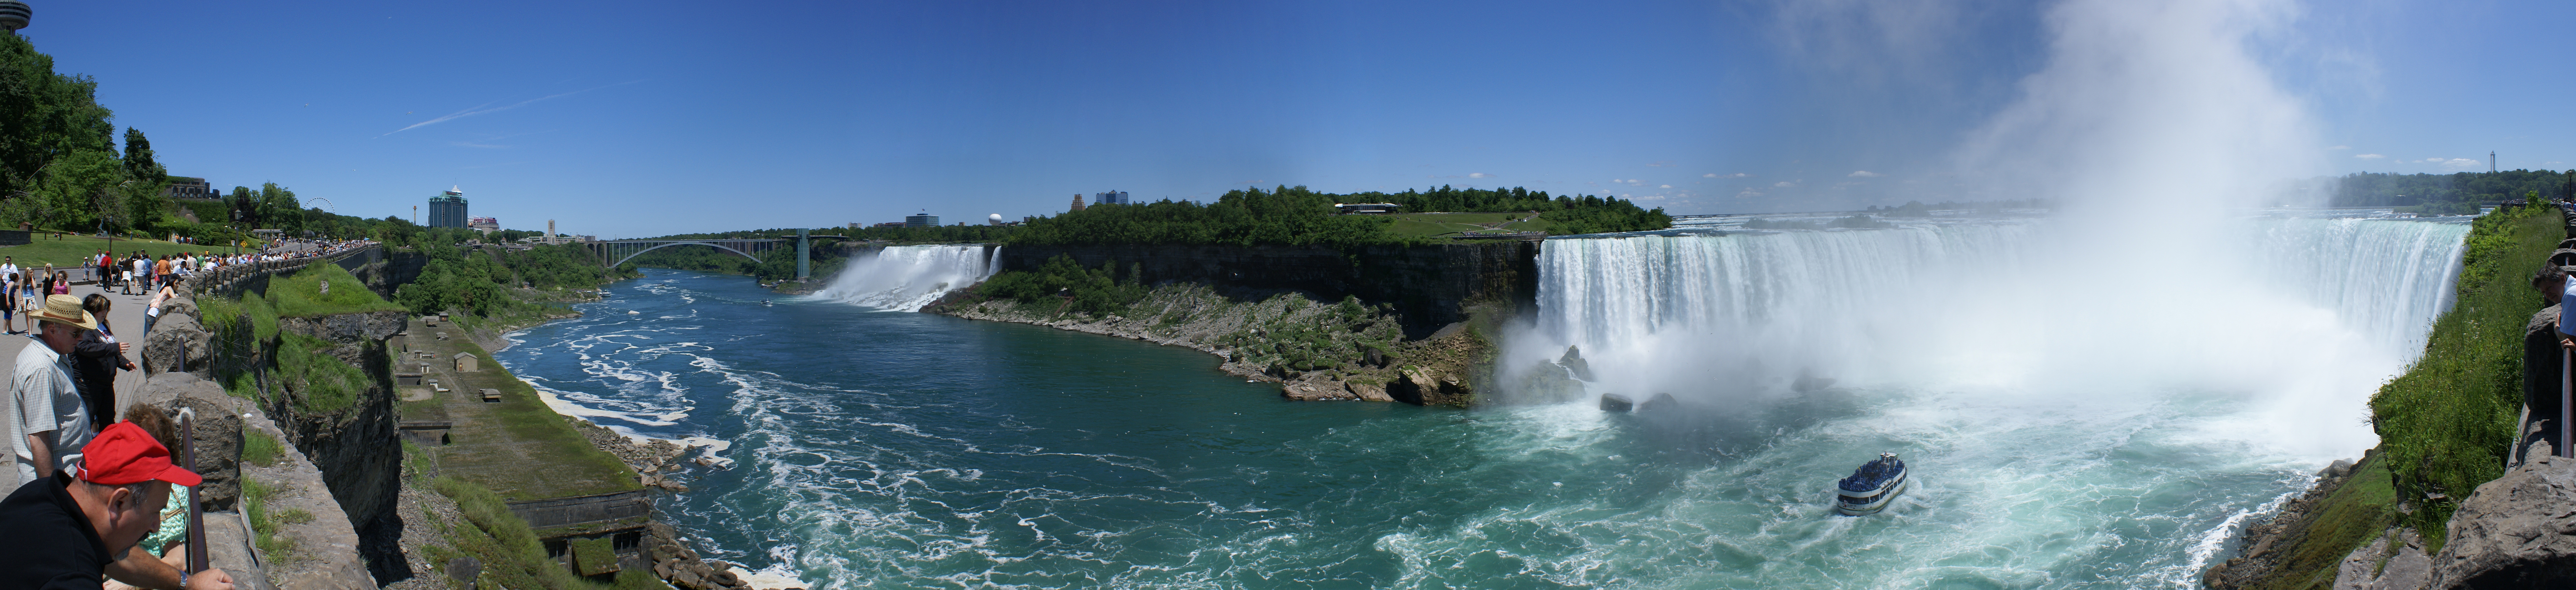 Niagara falls panorama.jpg